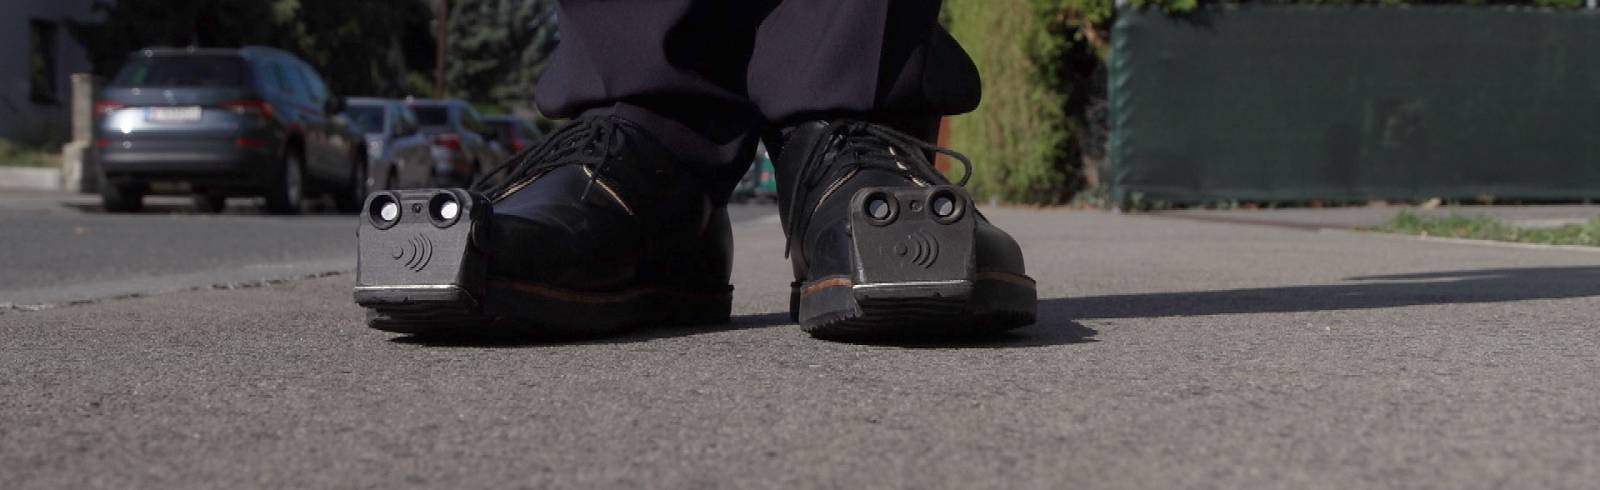 'Sehende Schuhe': Innovation für Sehbehinderte